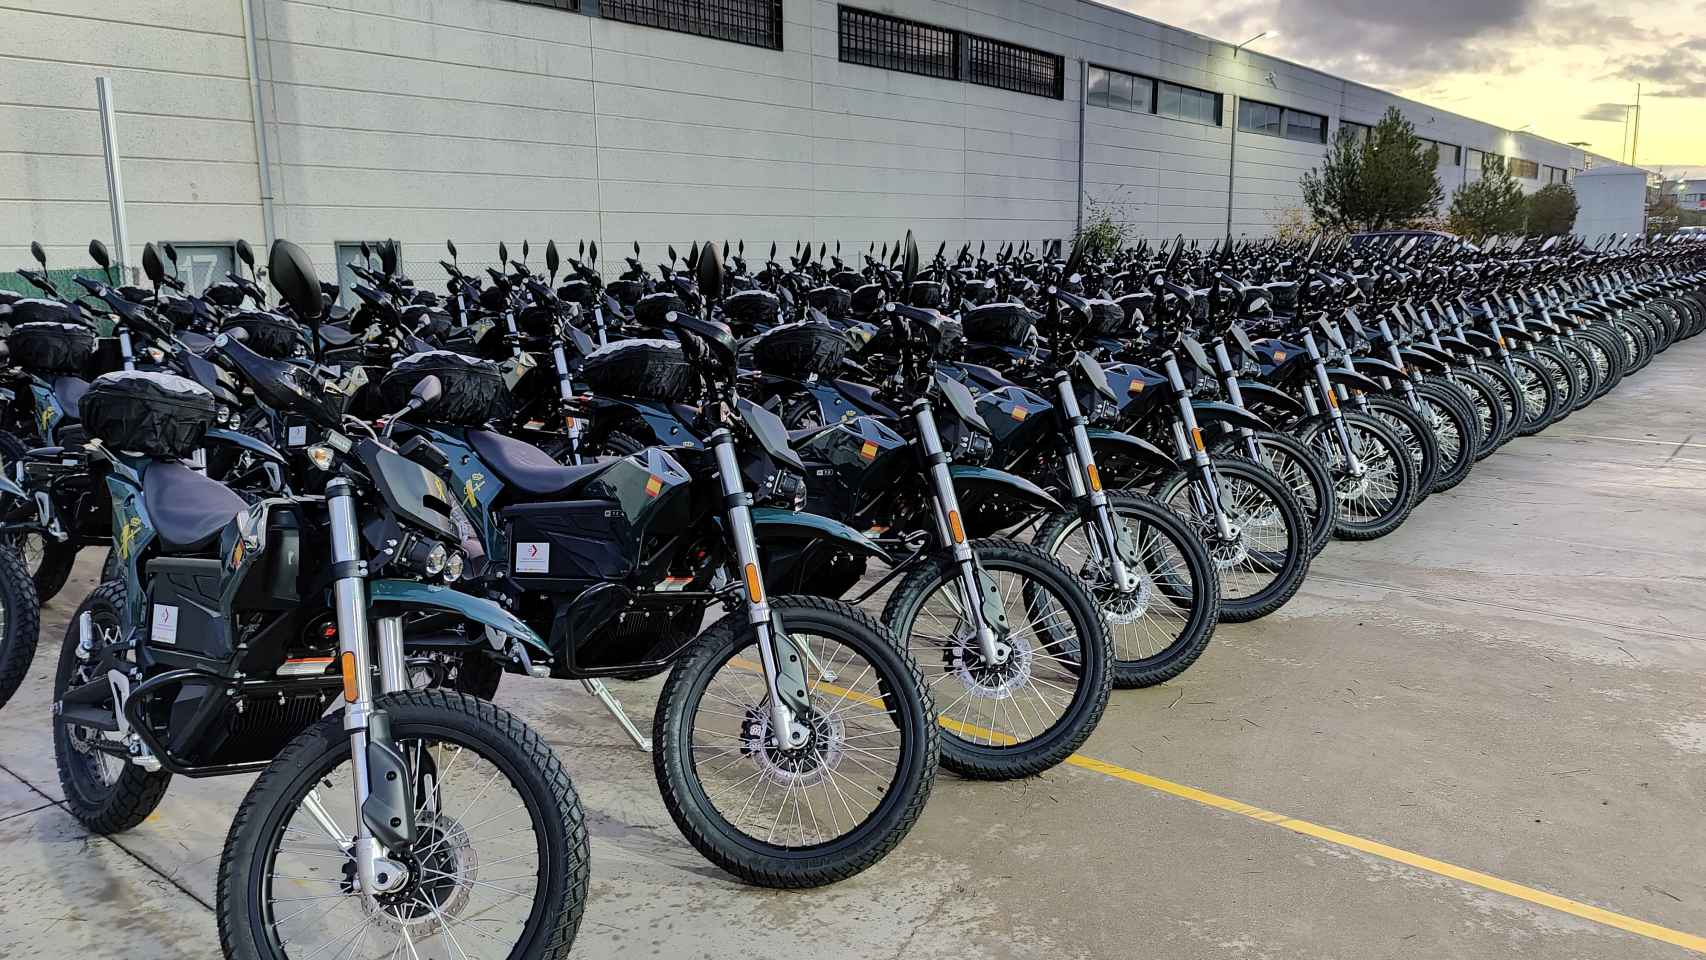 Estas motos tienen una autonomía de hasta 146 kilómetros en ciudad.